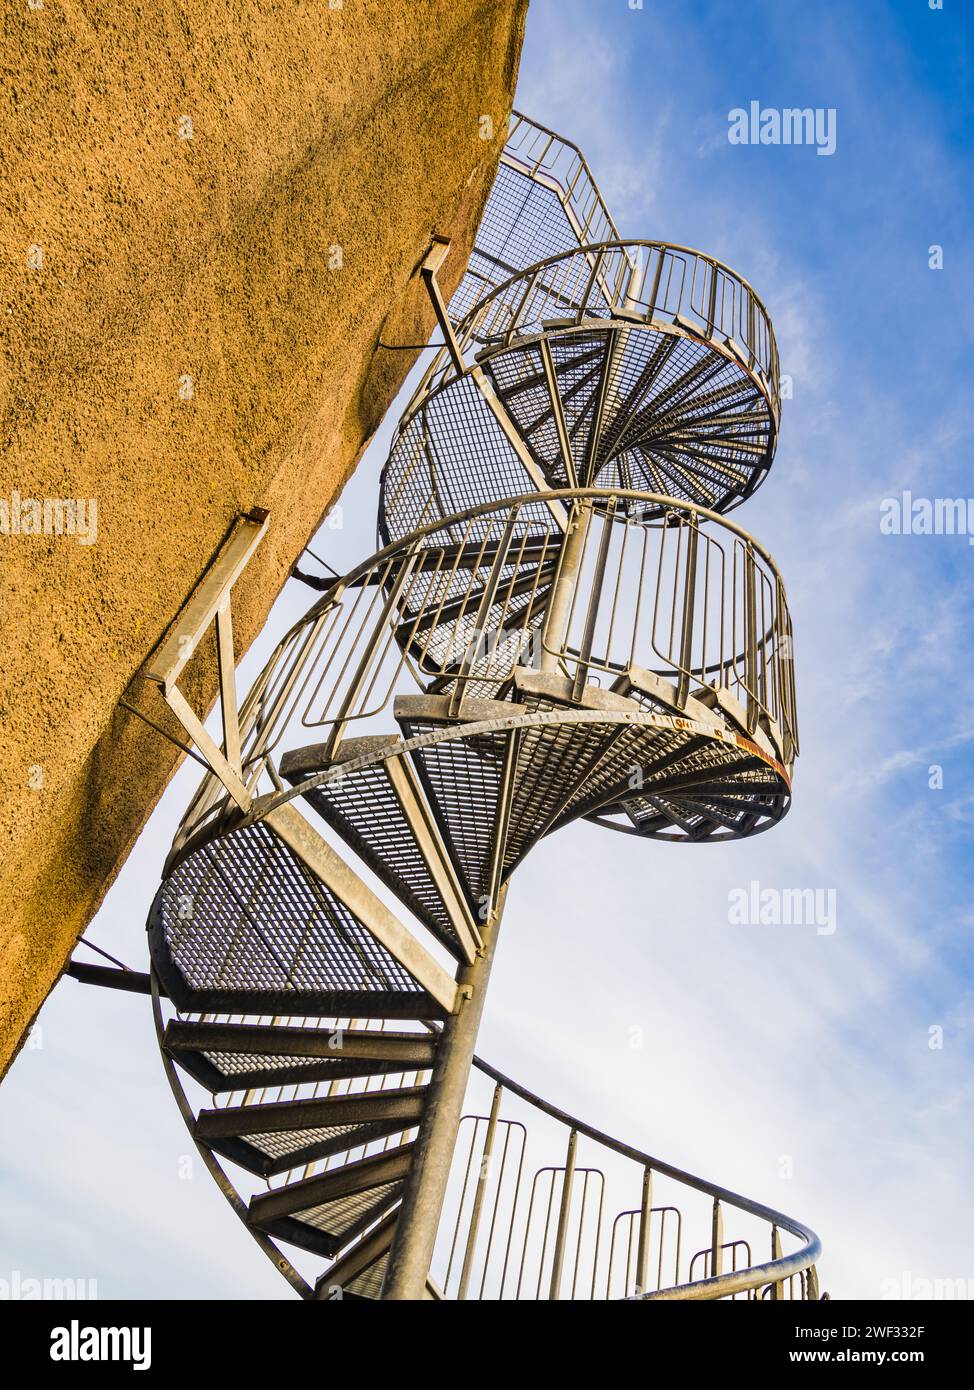 Cette image capture la conception complexe d'un escalier en colimaçon métallique montant le long de l'extérieur d'un bâtiment beige sous un ciel bleu clair. Banque D'Images